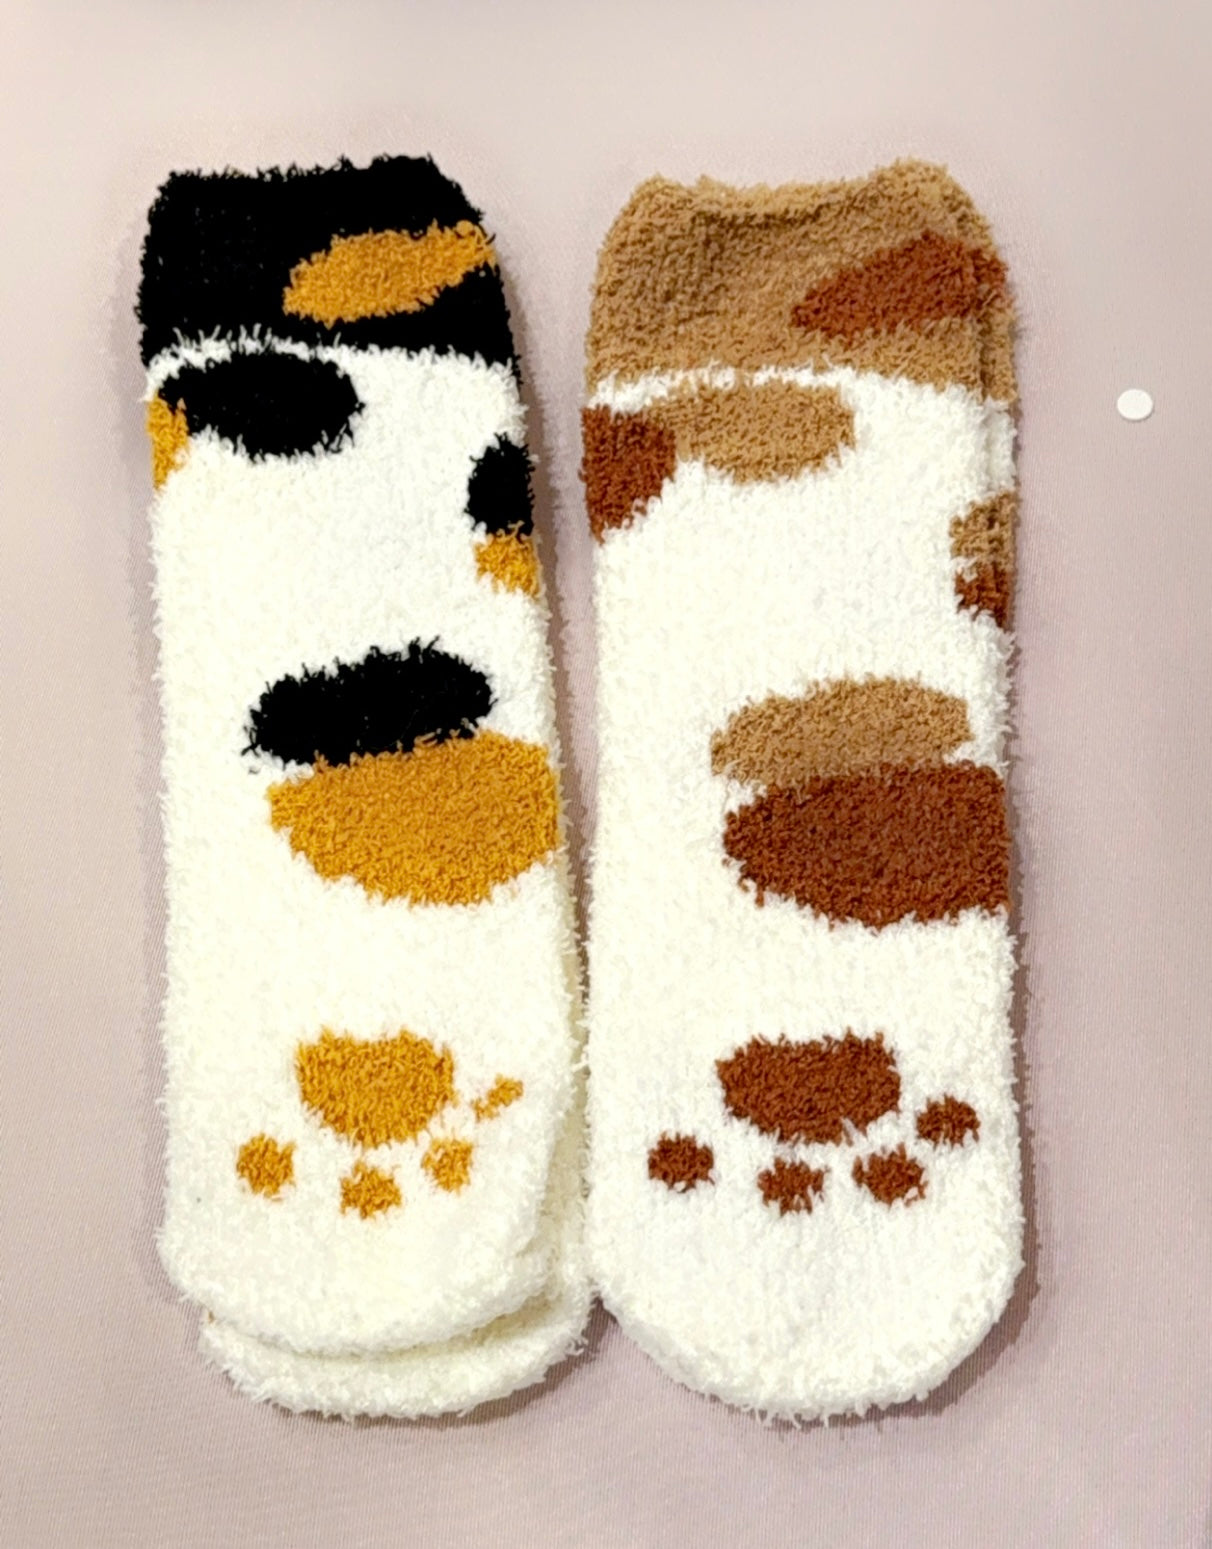 Fuzzy calico cat socks